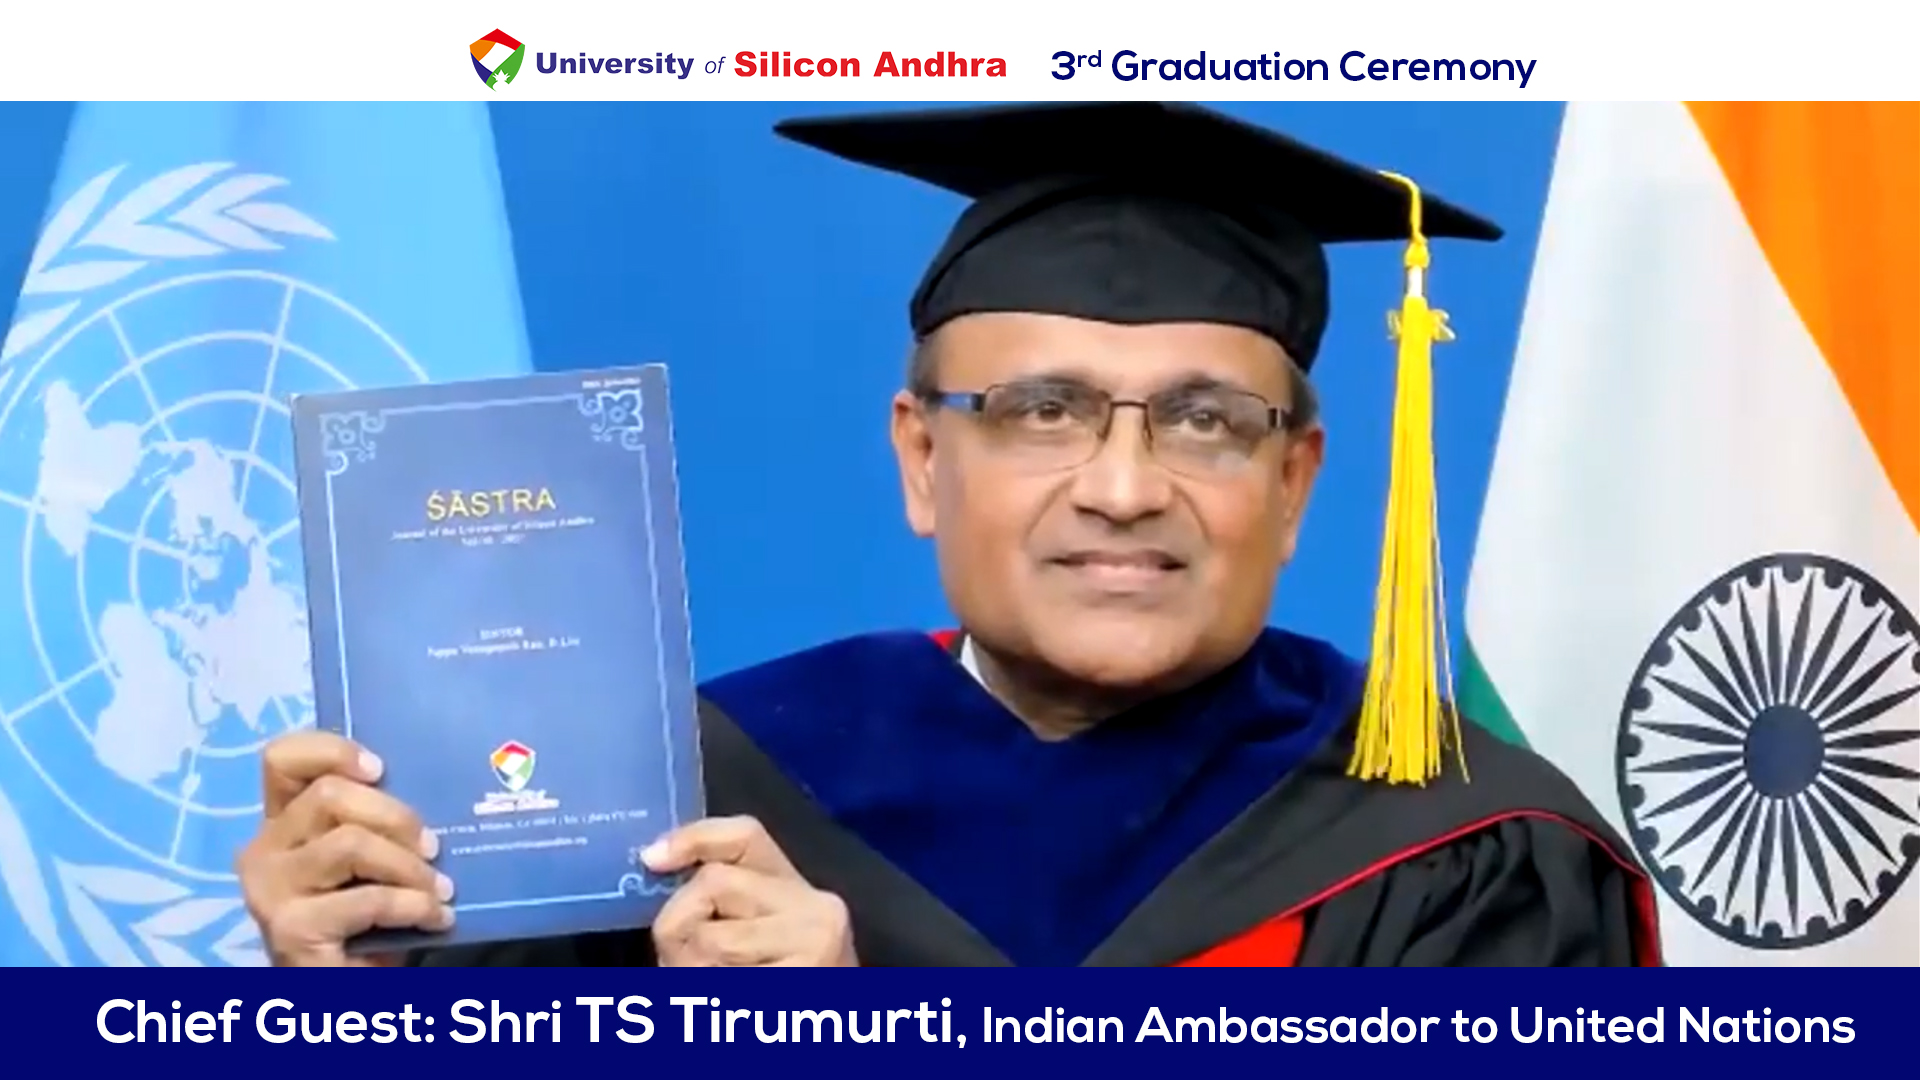 Ambassador T.S. Tirumurti